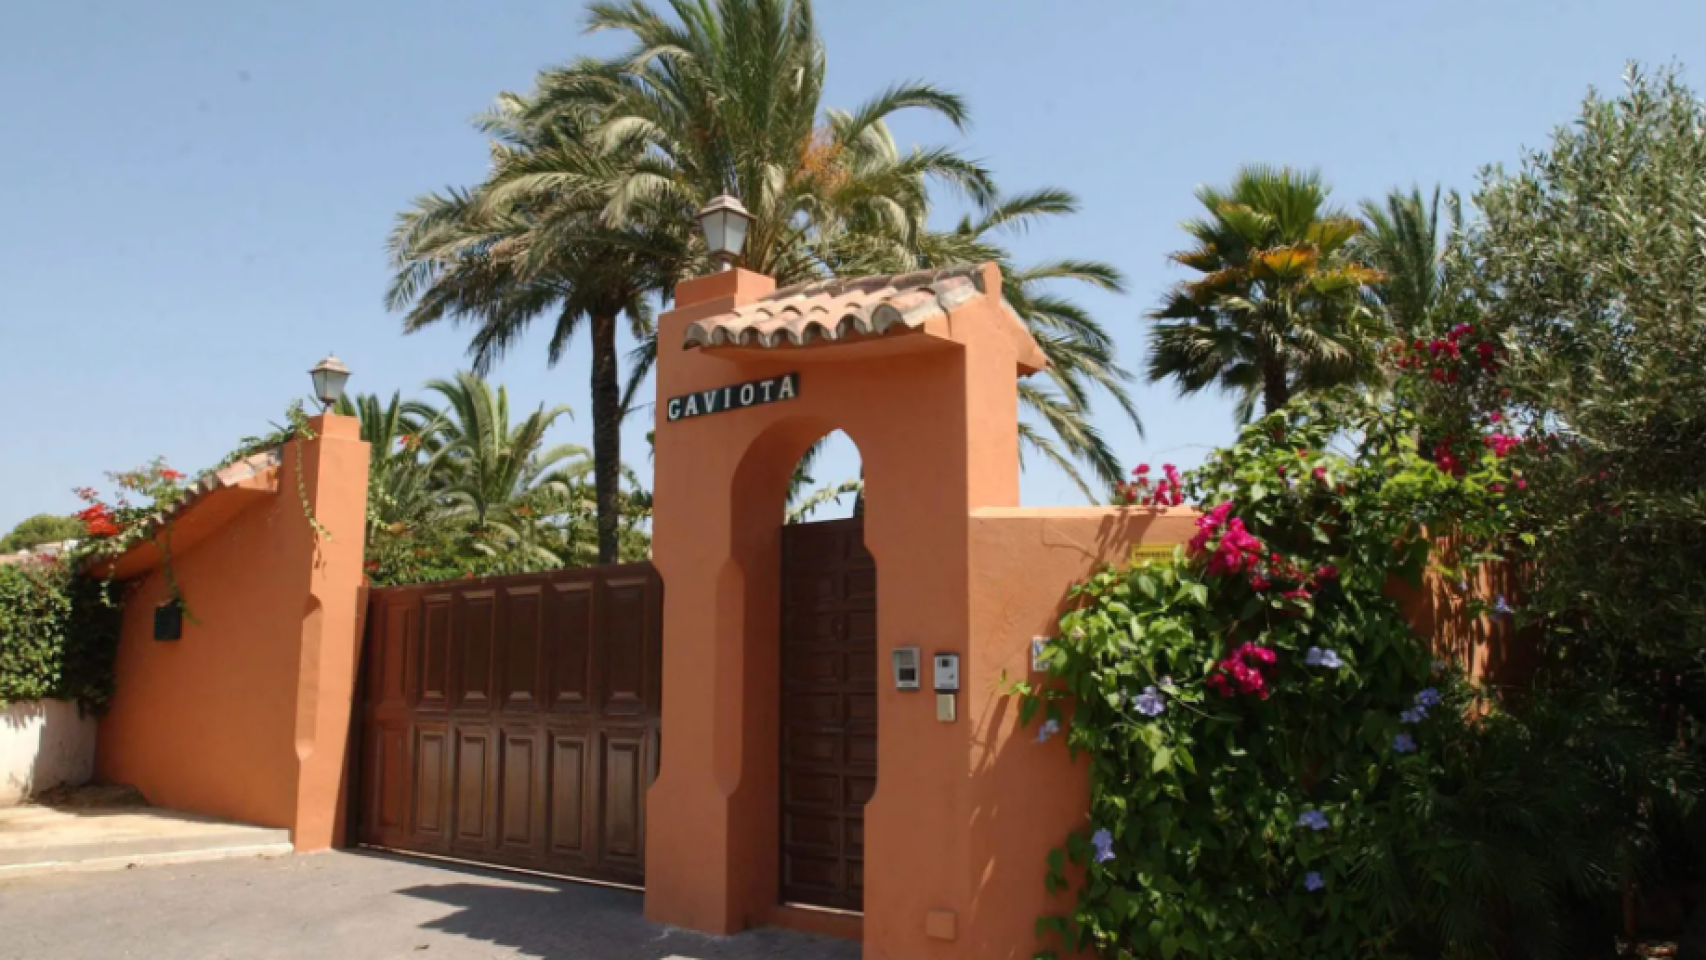 Fachada de la casa del actor Antonio Banderas en la localidad malagueña de Marbella, conocida como La Gaviota.